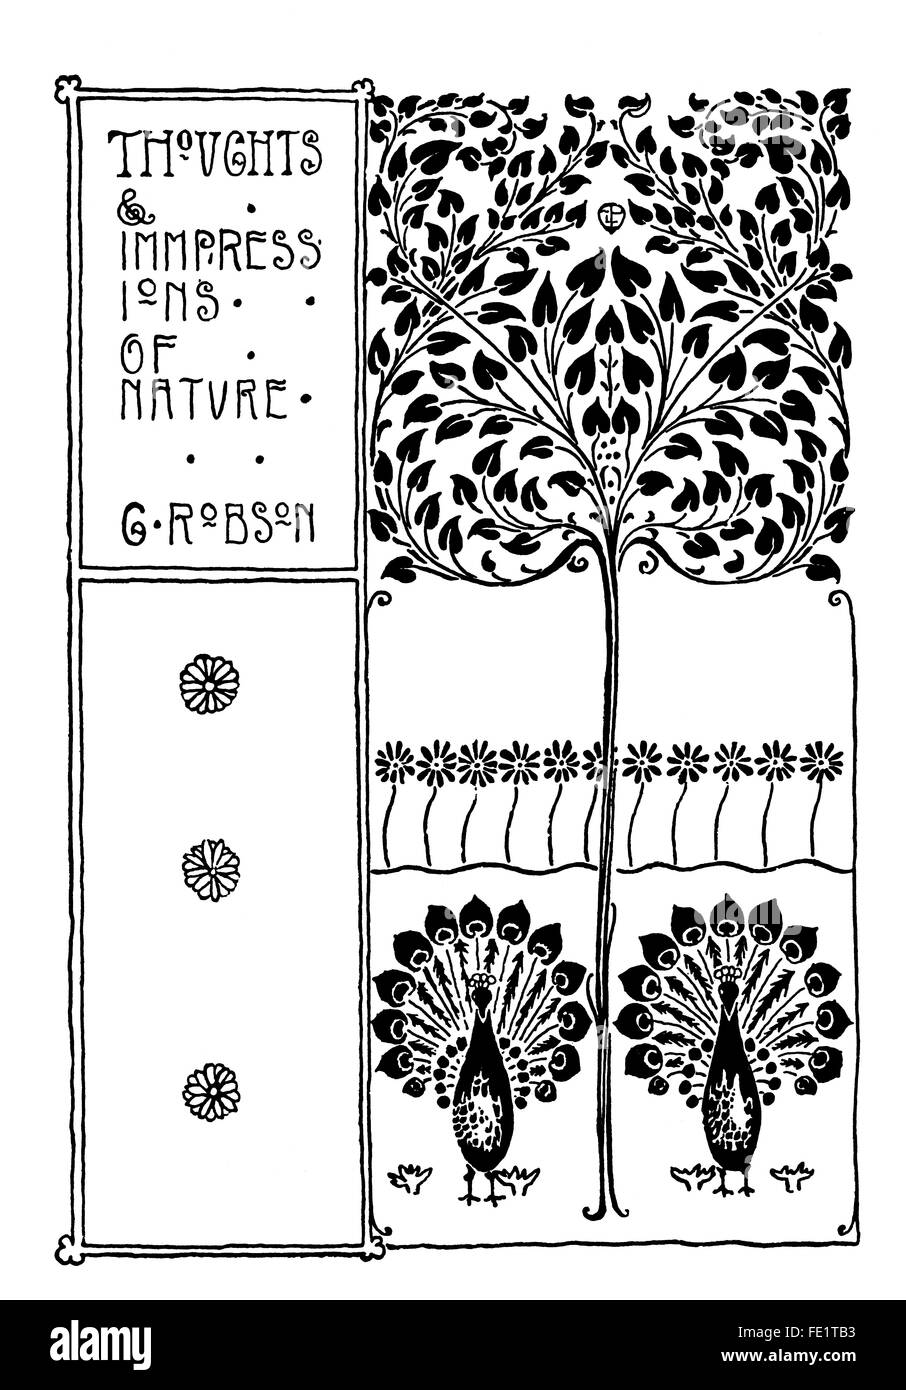 Impressions de la Nature, livre à couverture par Edgar L Pattison de Londres, l'art nouveau de 1897 Illustration ligne Banque D'Images